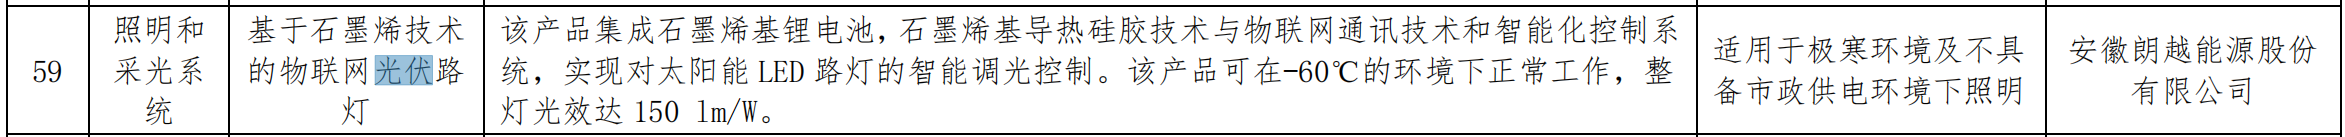 关于发布北京市节能技术产品推荐目录（2020年本）的通知 （京发改〔2020〕1889号）20201228